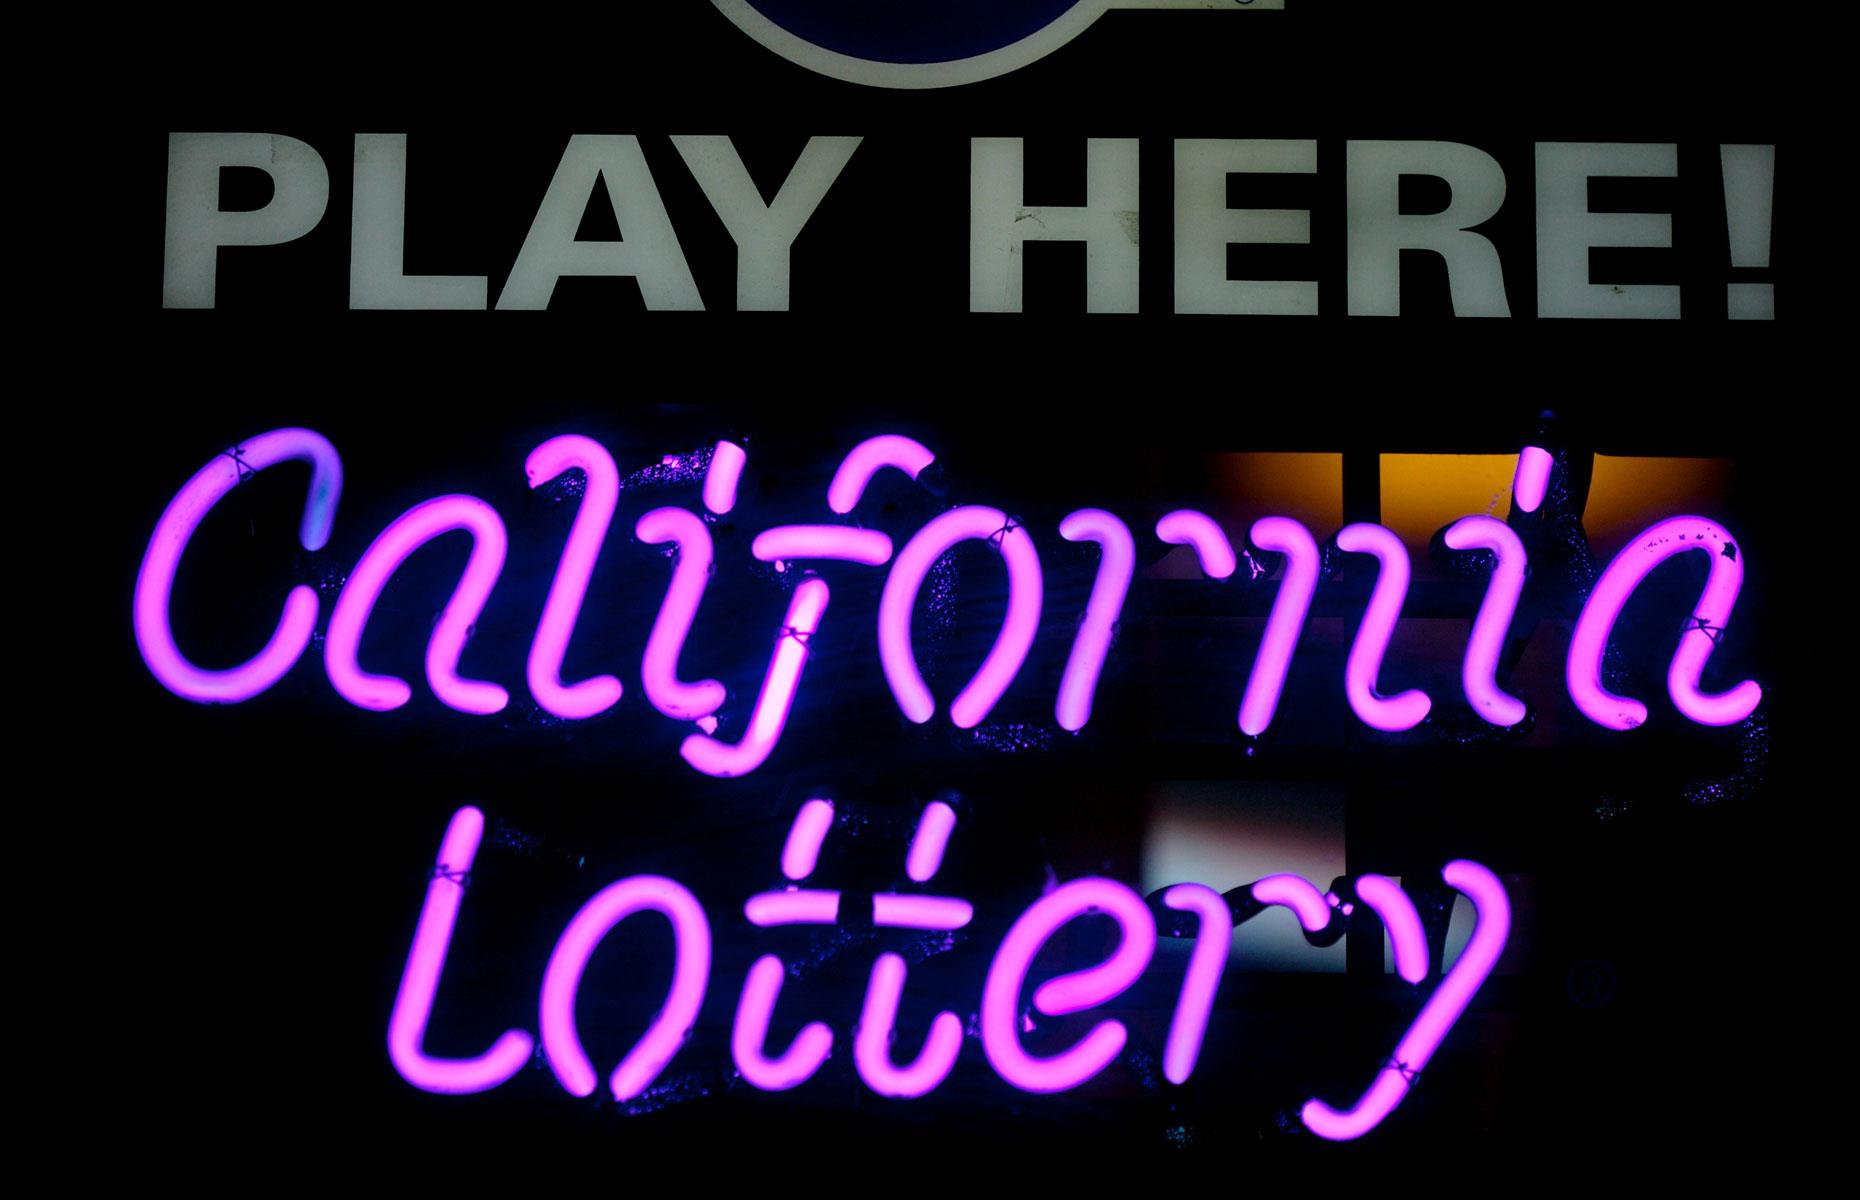 SuperLotto, California Lottery, 2000: $25 million (£16.5m)